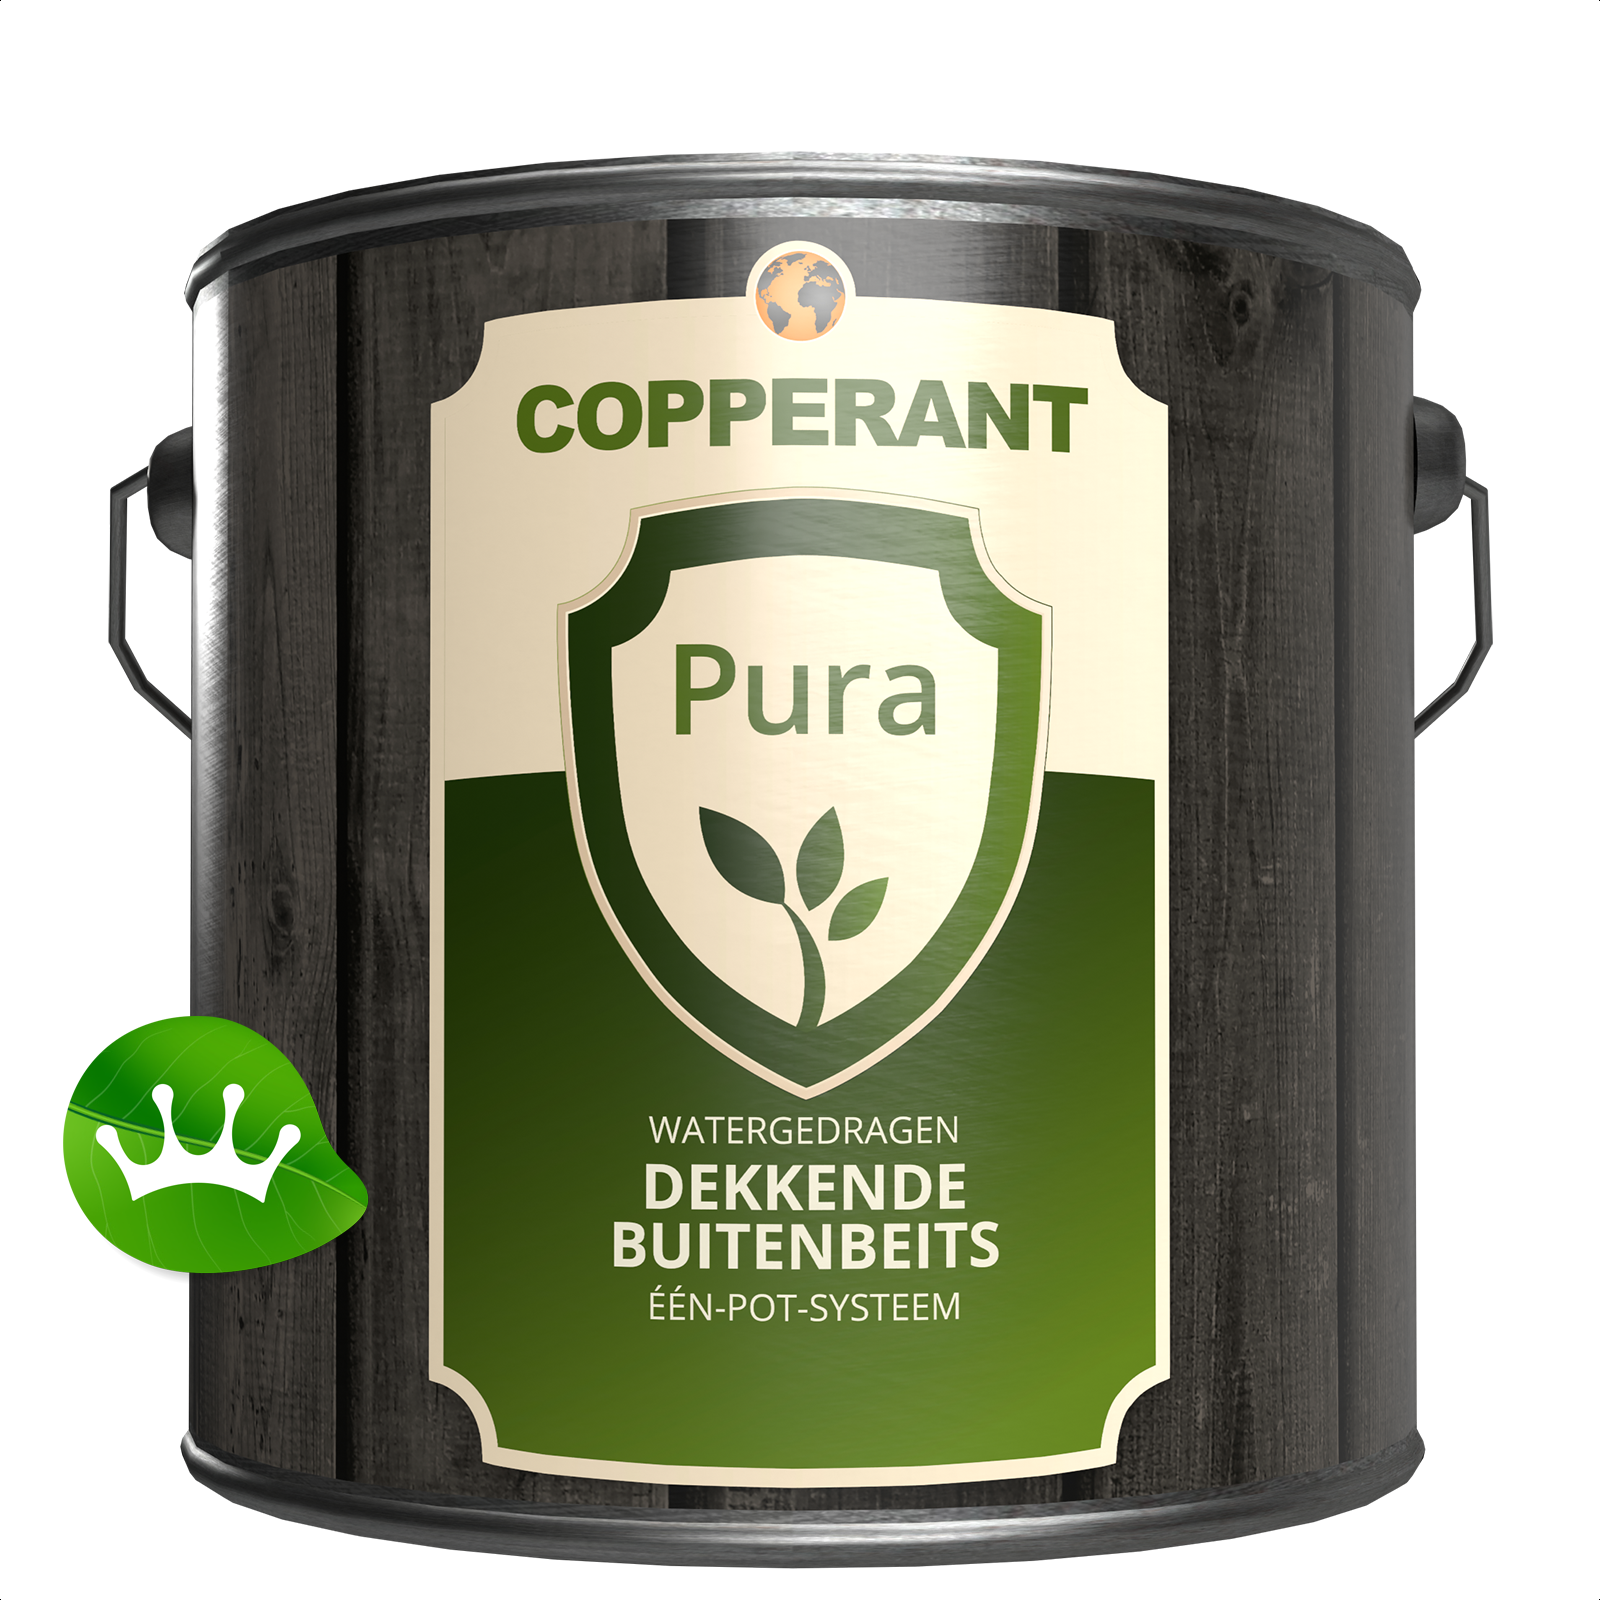 Copperant Pura - Verf.nl